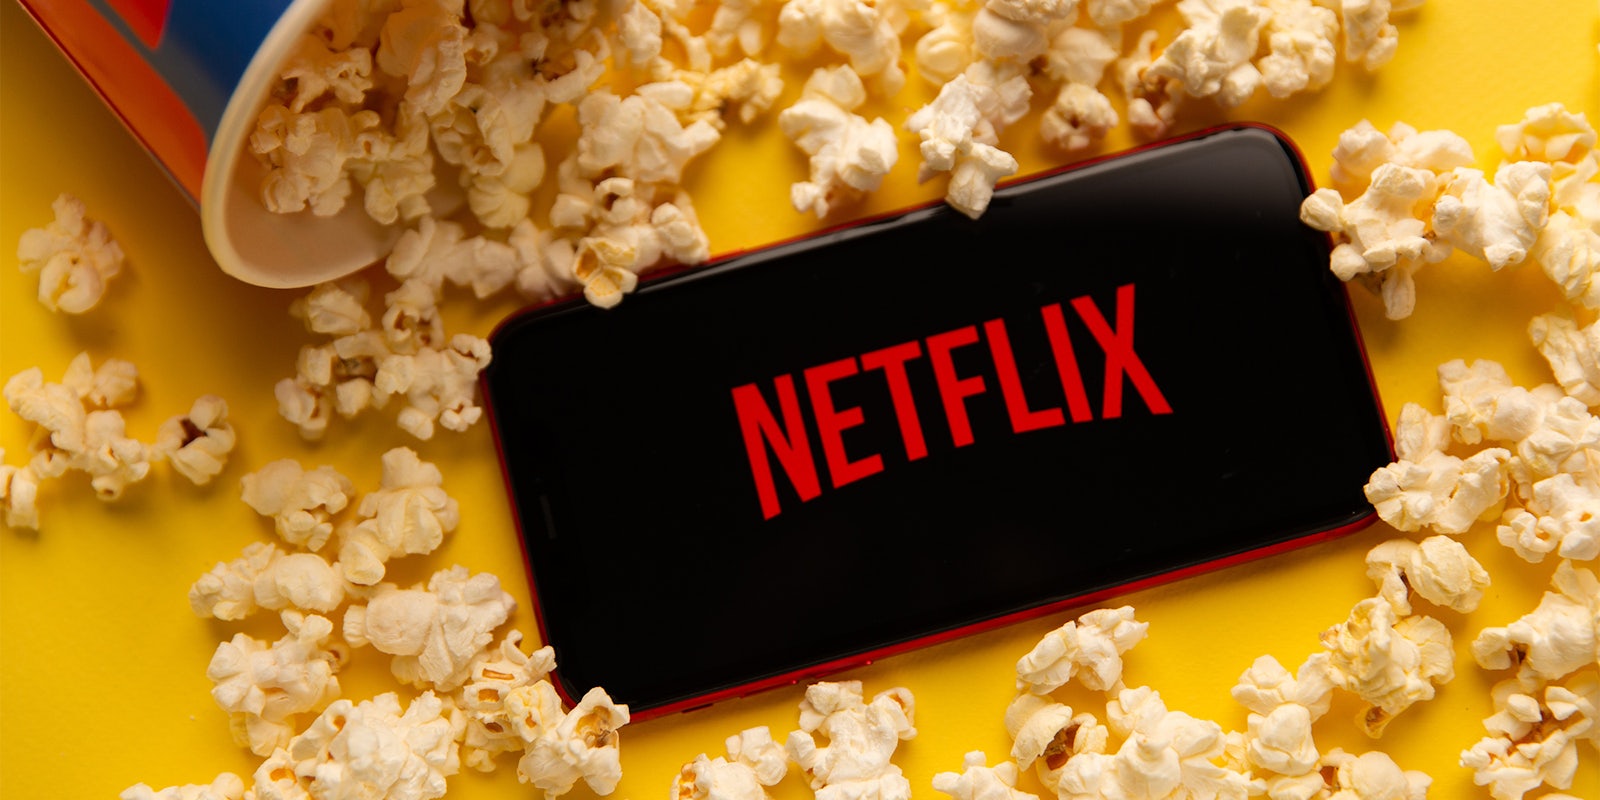 Netflix logo on phone with popcorn